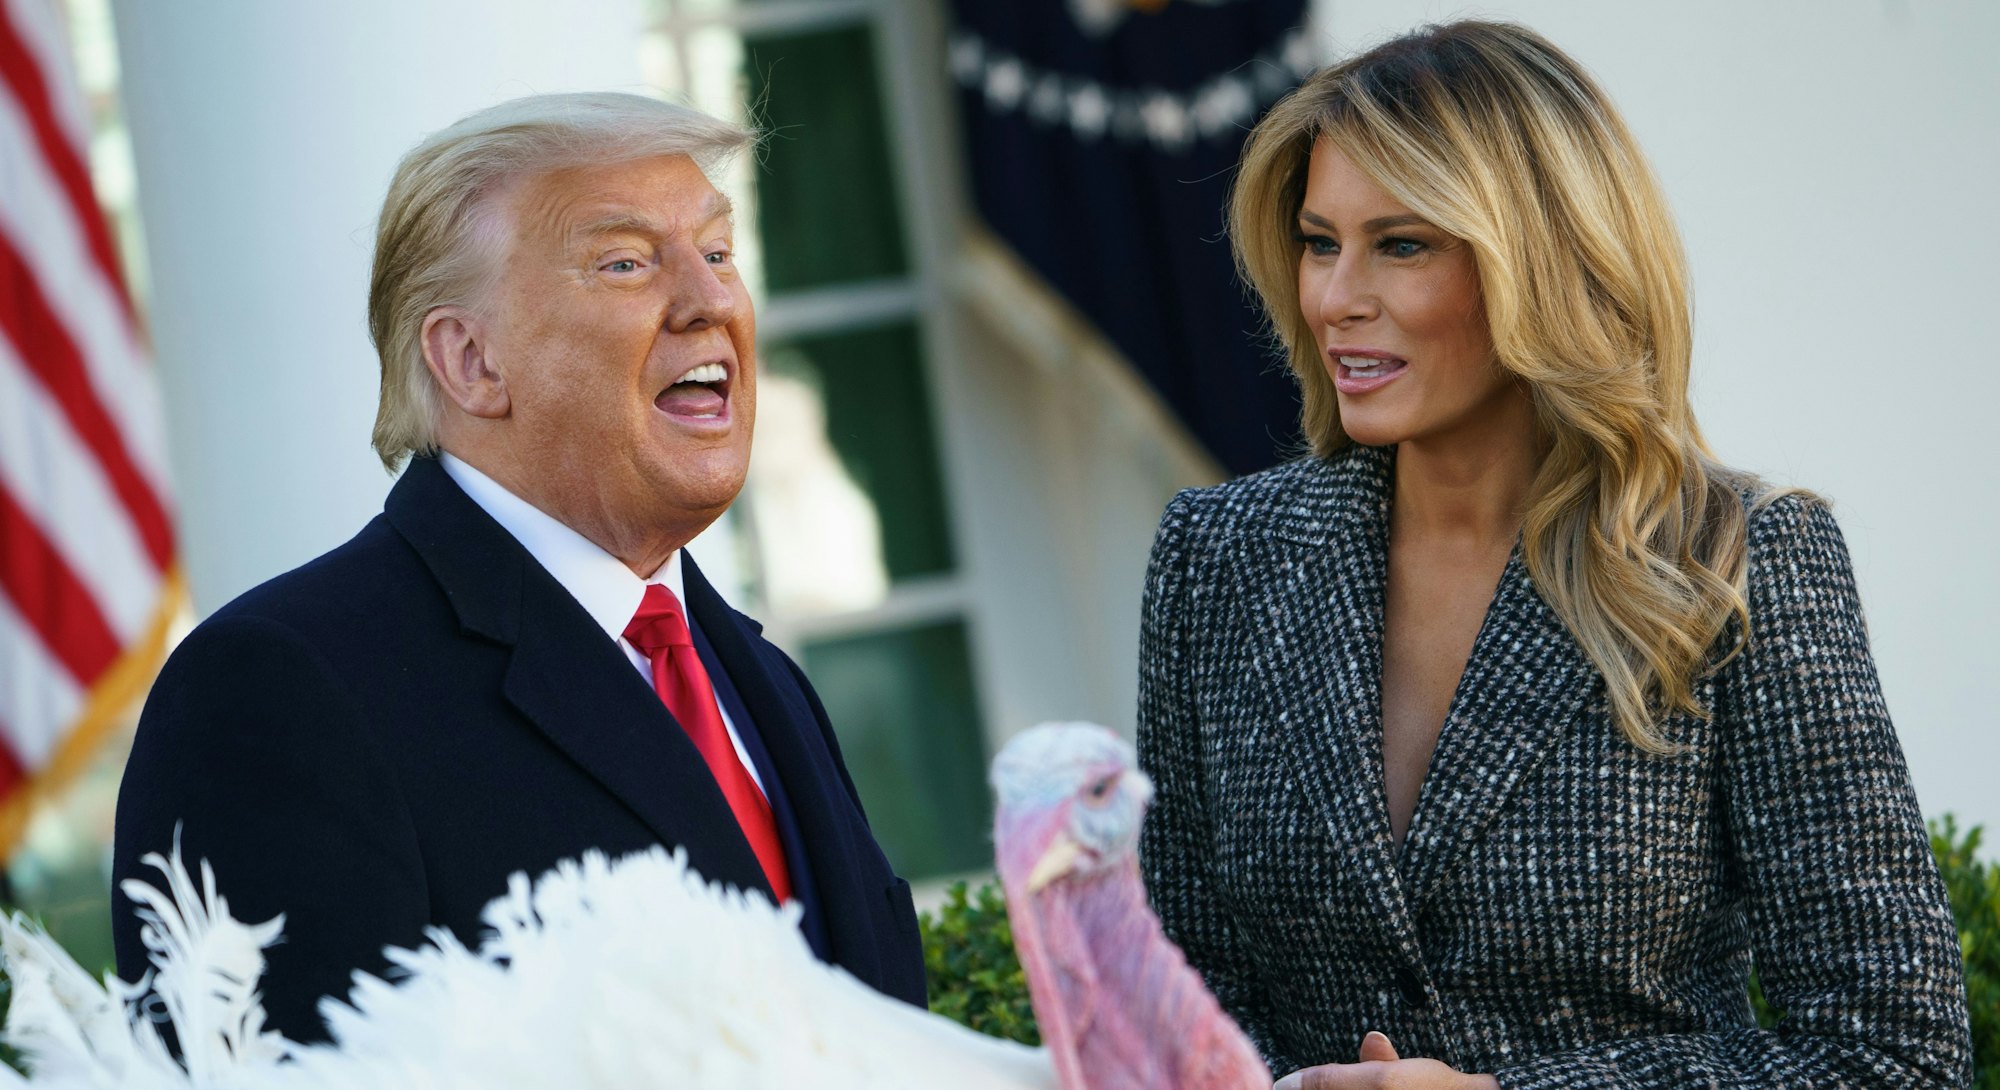 Donald Trump pardoning a turkey